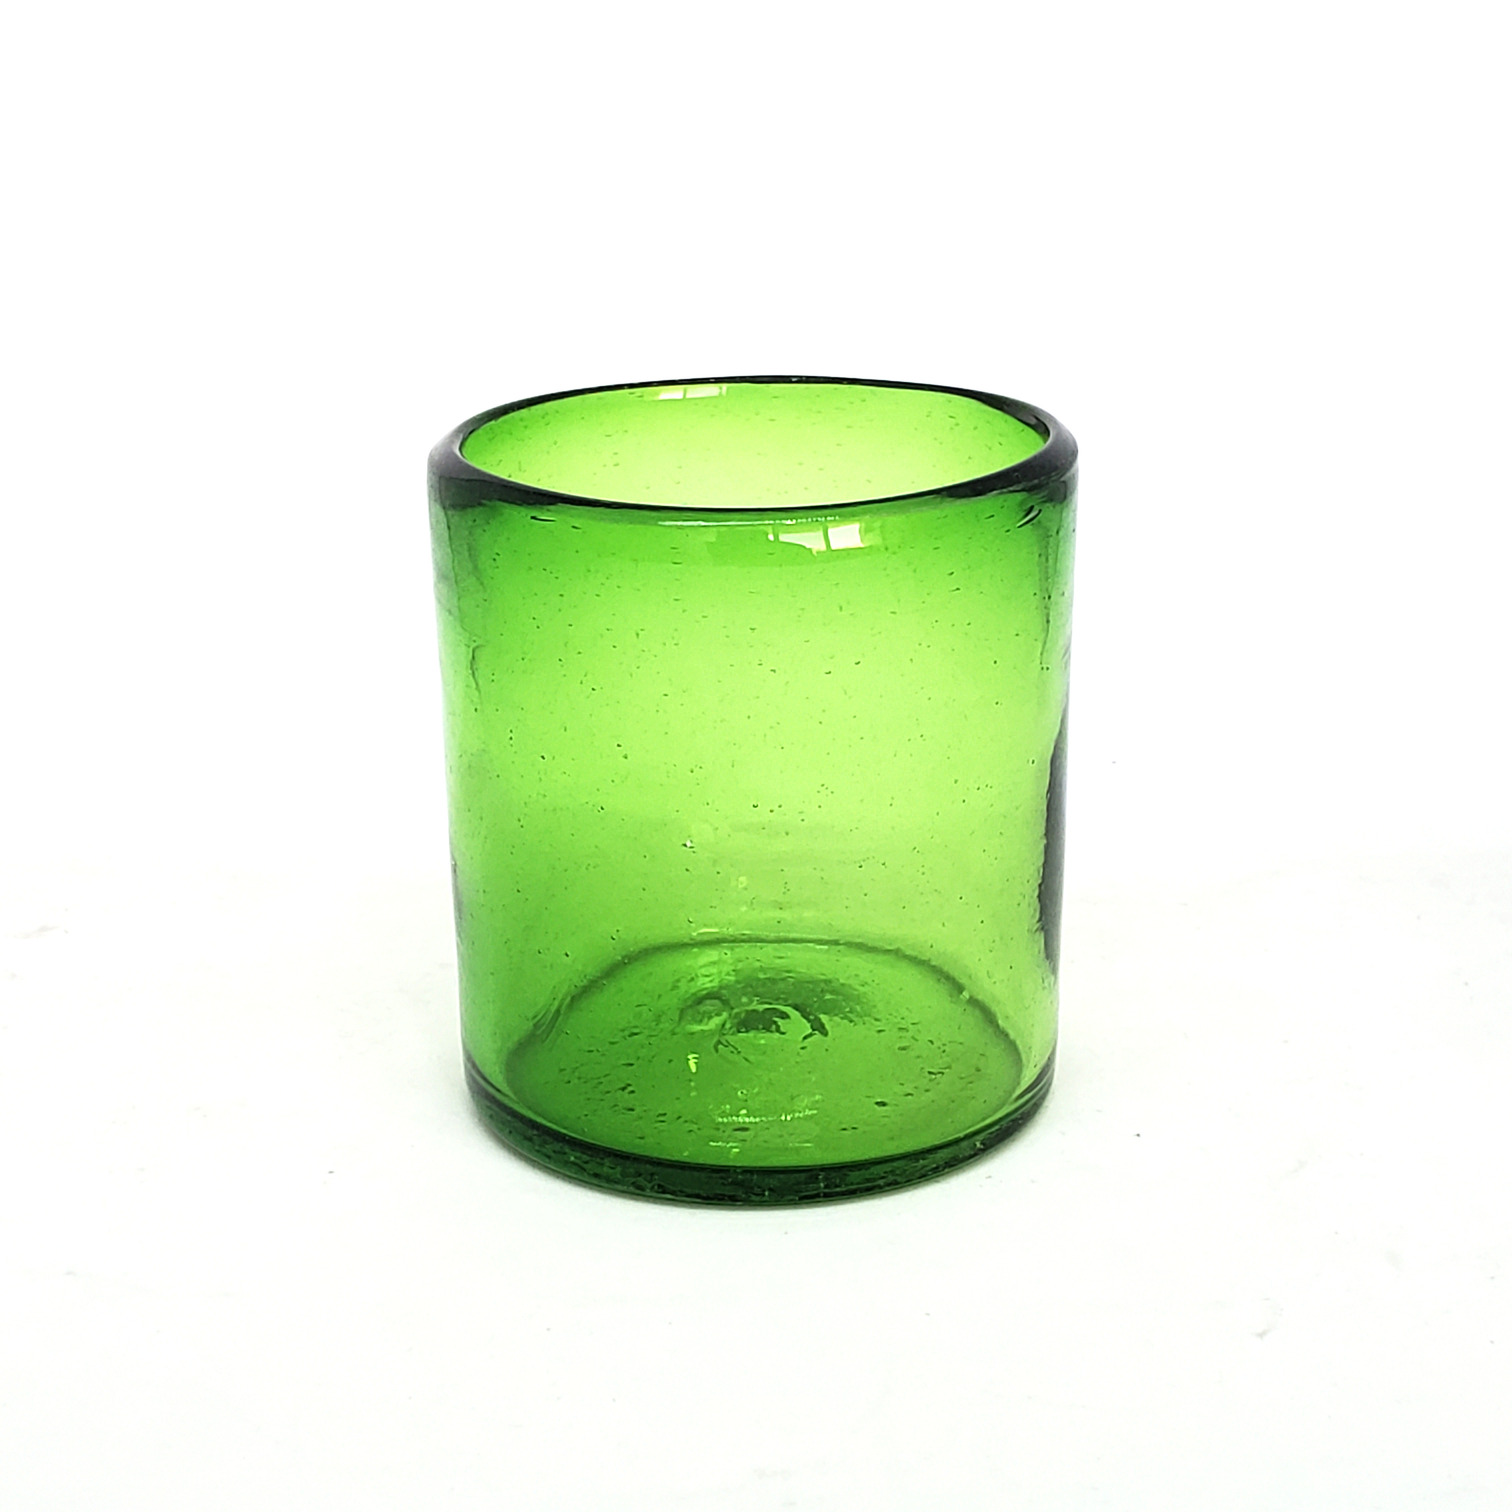 Novedades / Vasos chicos 9 oz color Verde Esmeralda S�lido (set de 6) / �stos artesanales vasos le dar�n un toque colorido a su bebida favorita.